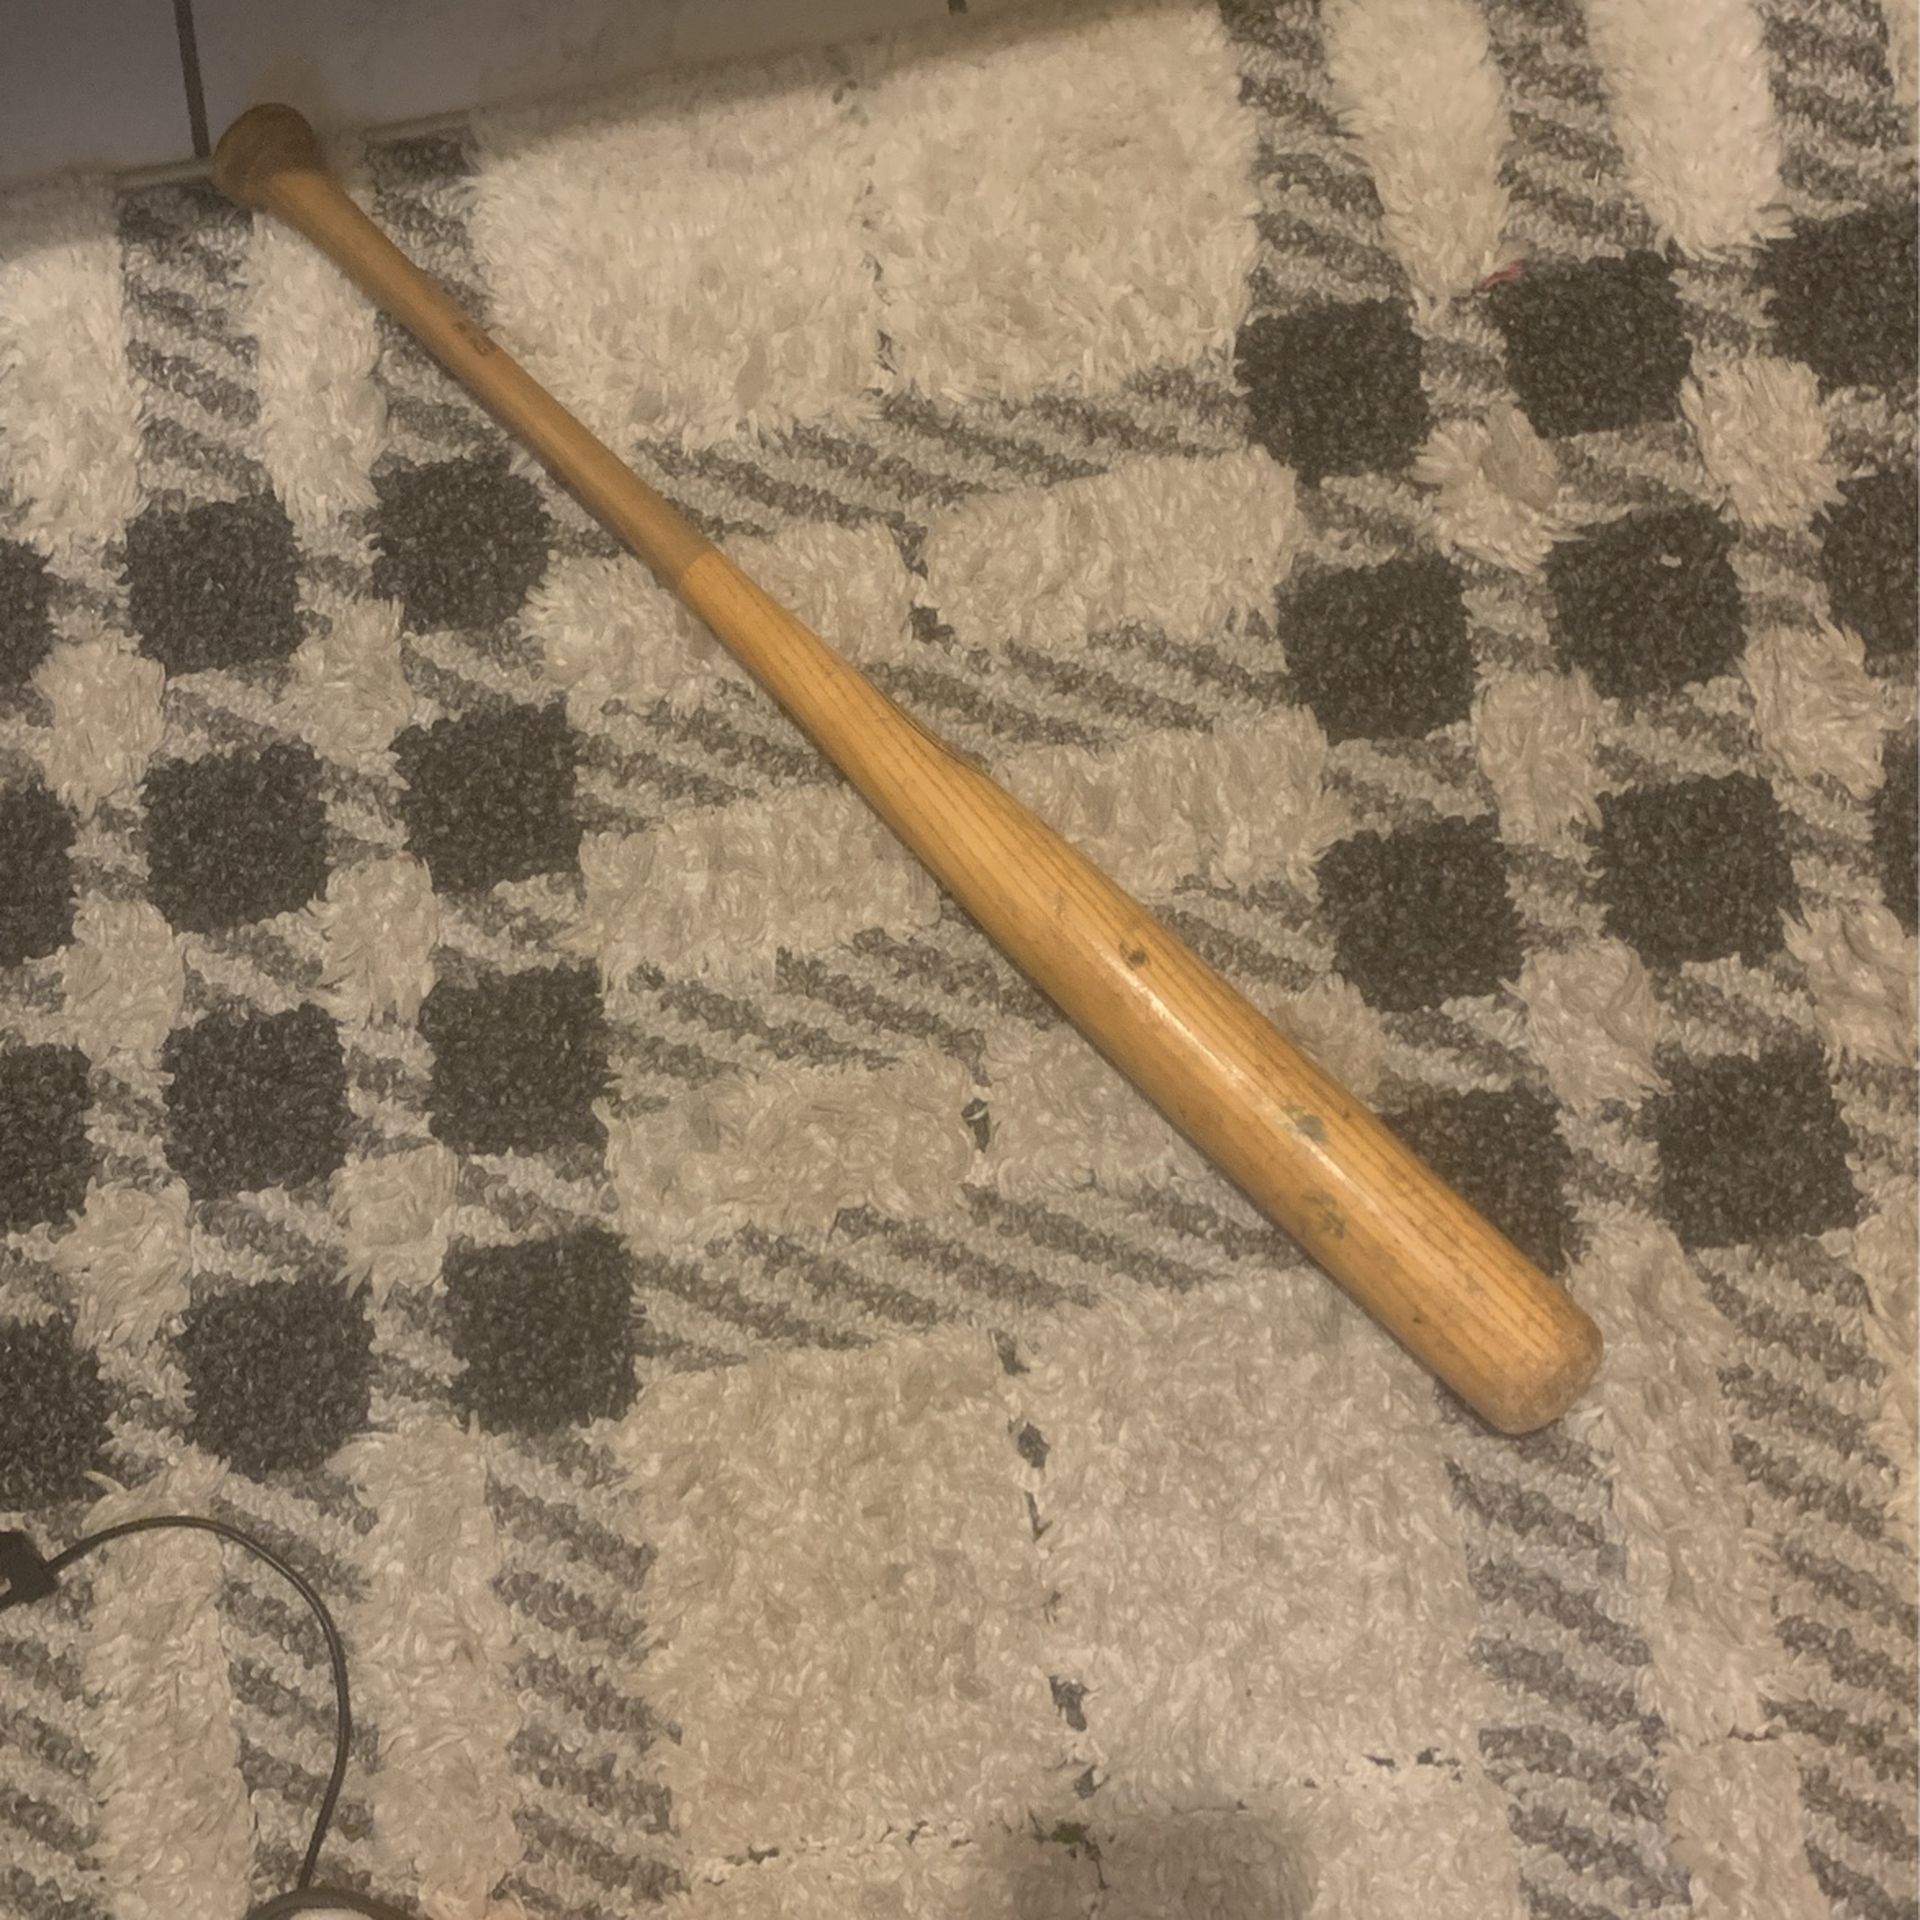 36 inch baseball bat